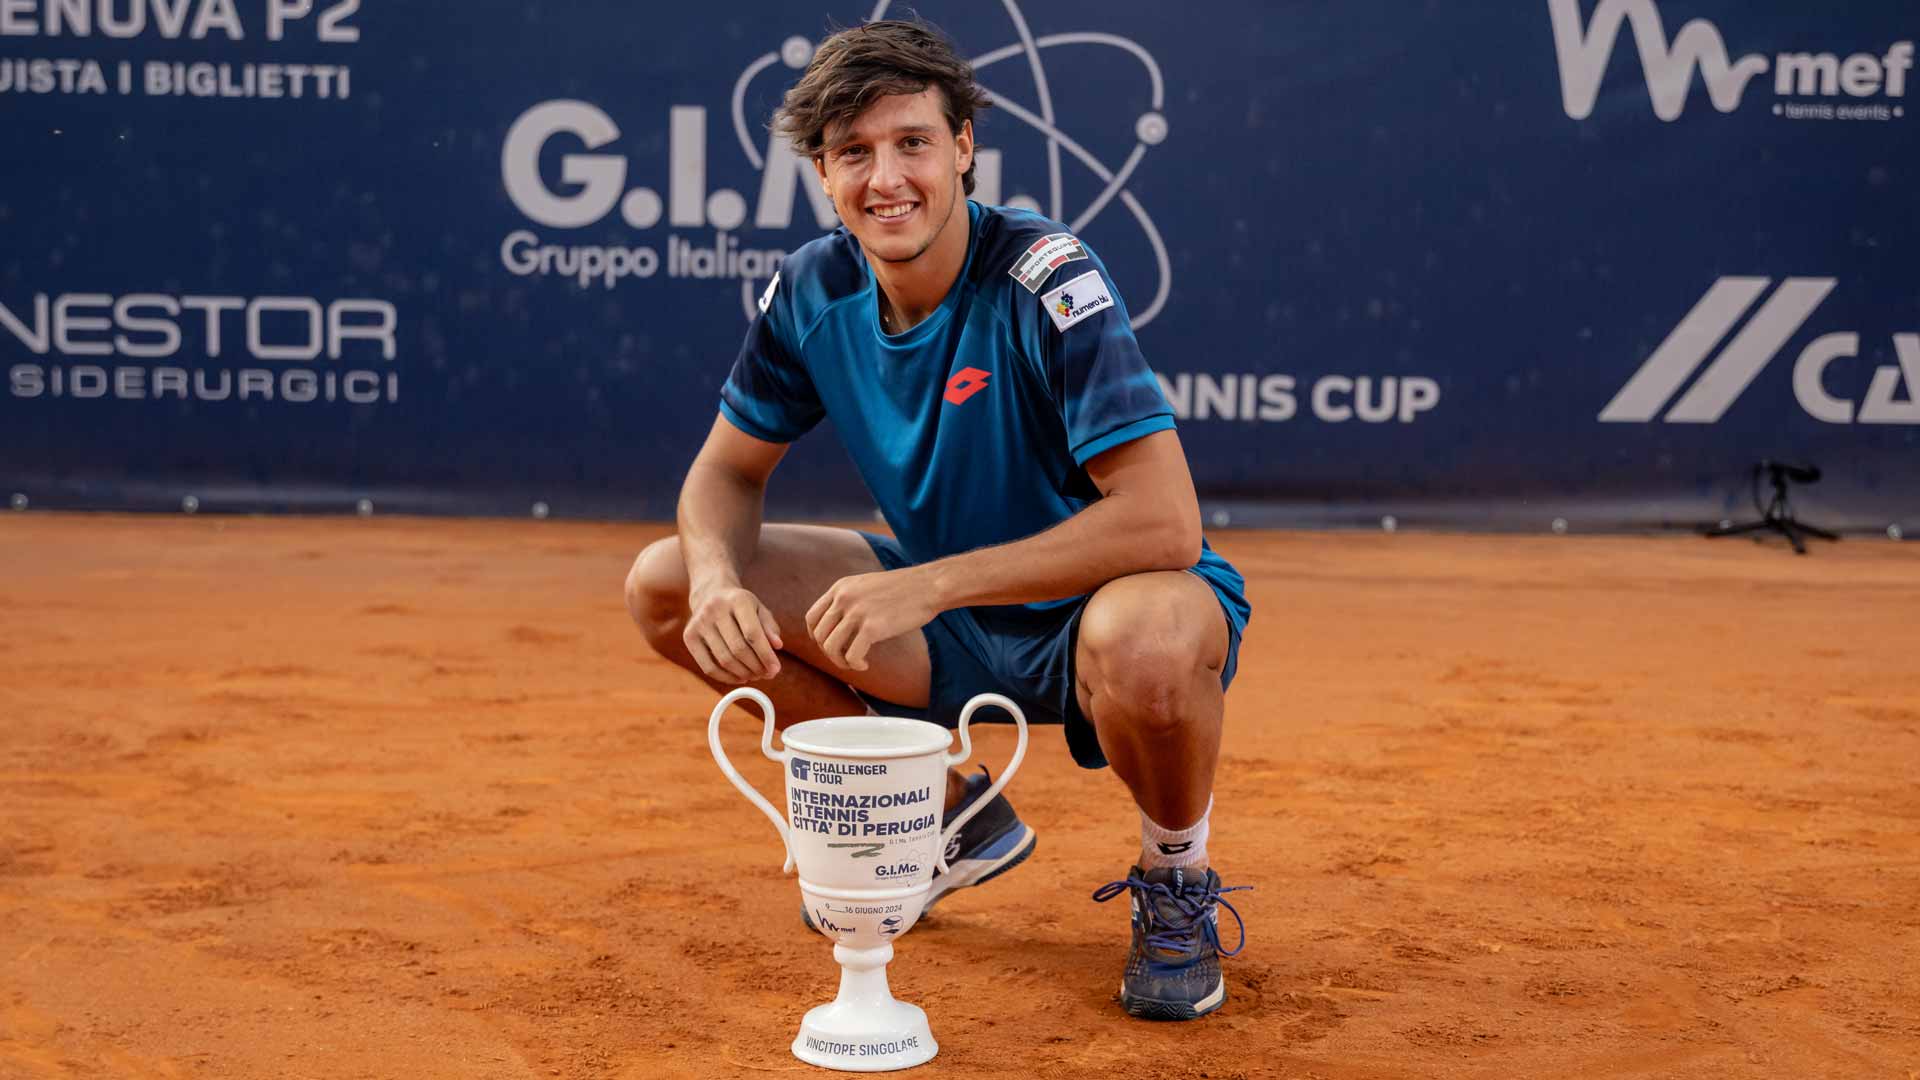 Luciano Darderi is crowned champion at the Internazionali di Tennis Citta di Perugia.